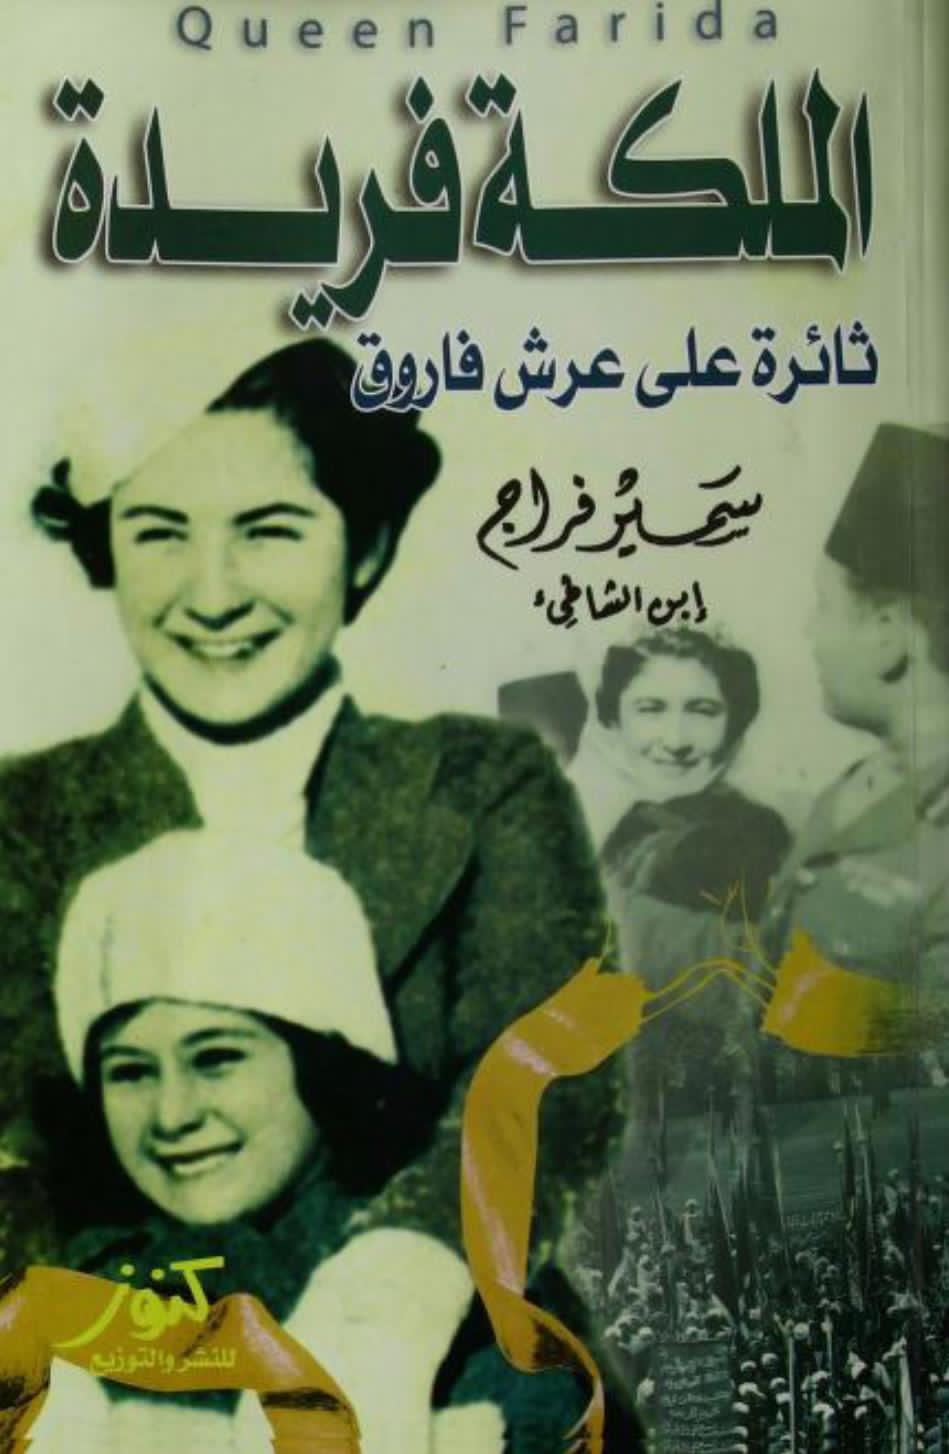 اول كتاب يصدر عنها ... الملكة فريدة ثائرة علي عرش فاروق